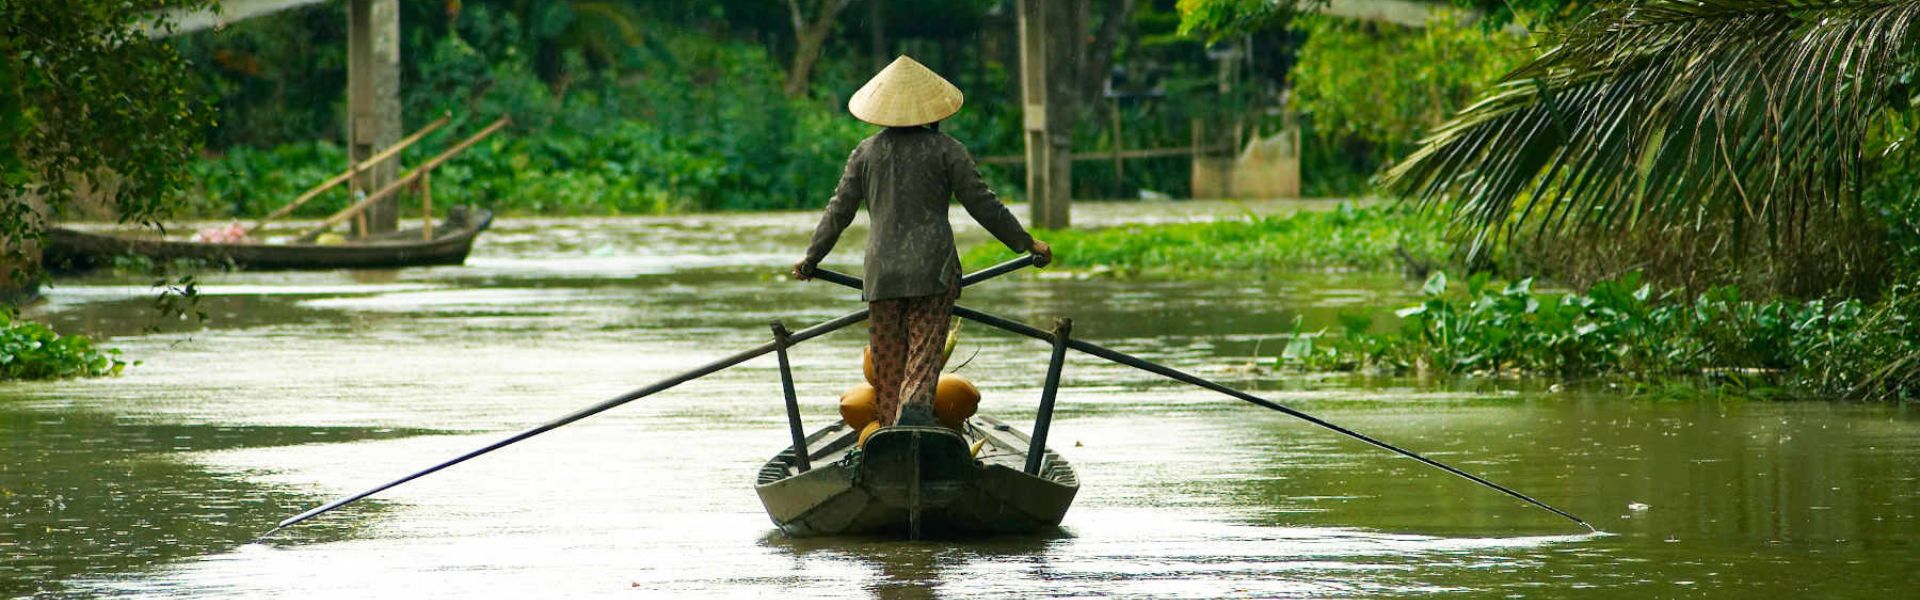 Delta de Mekong de Vietnam - Guía de viajes y consejos